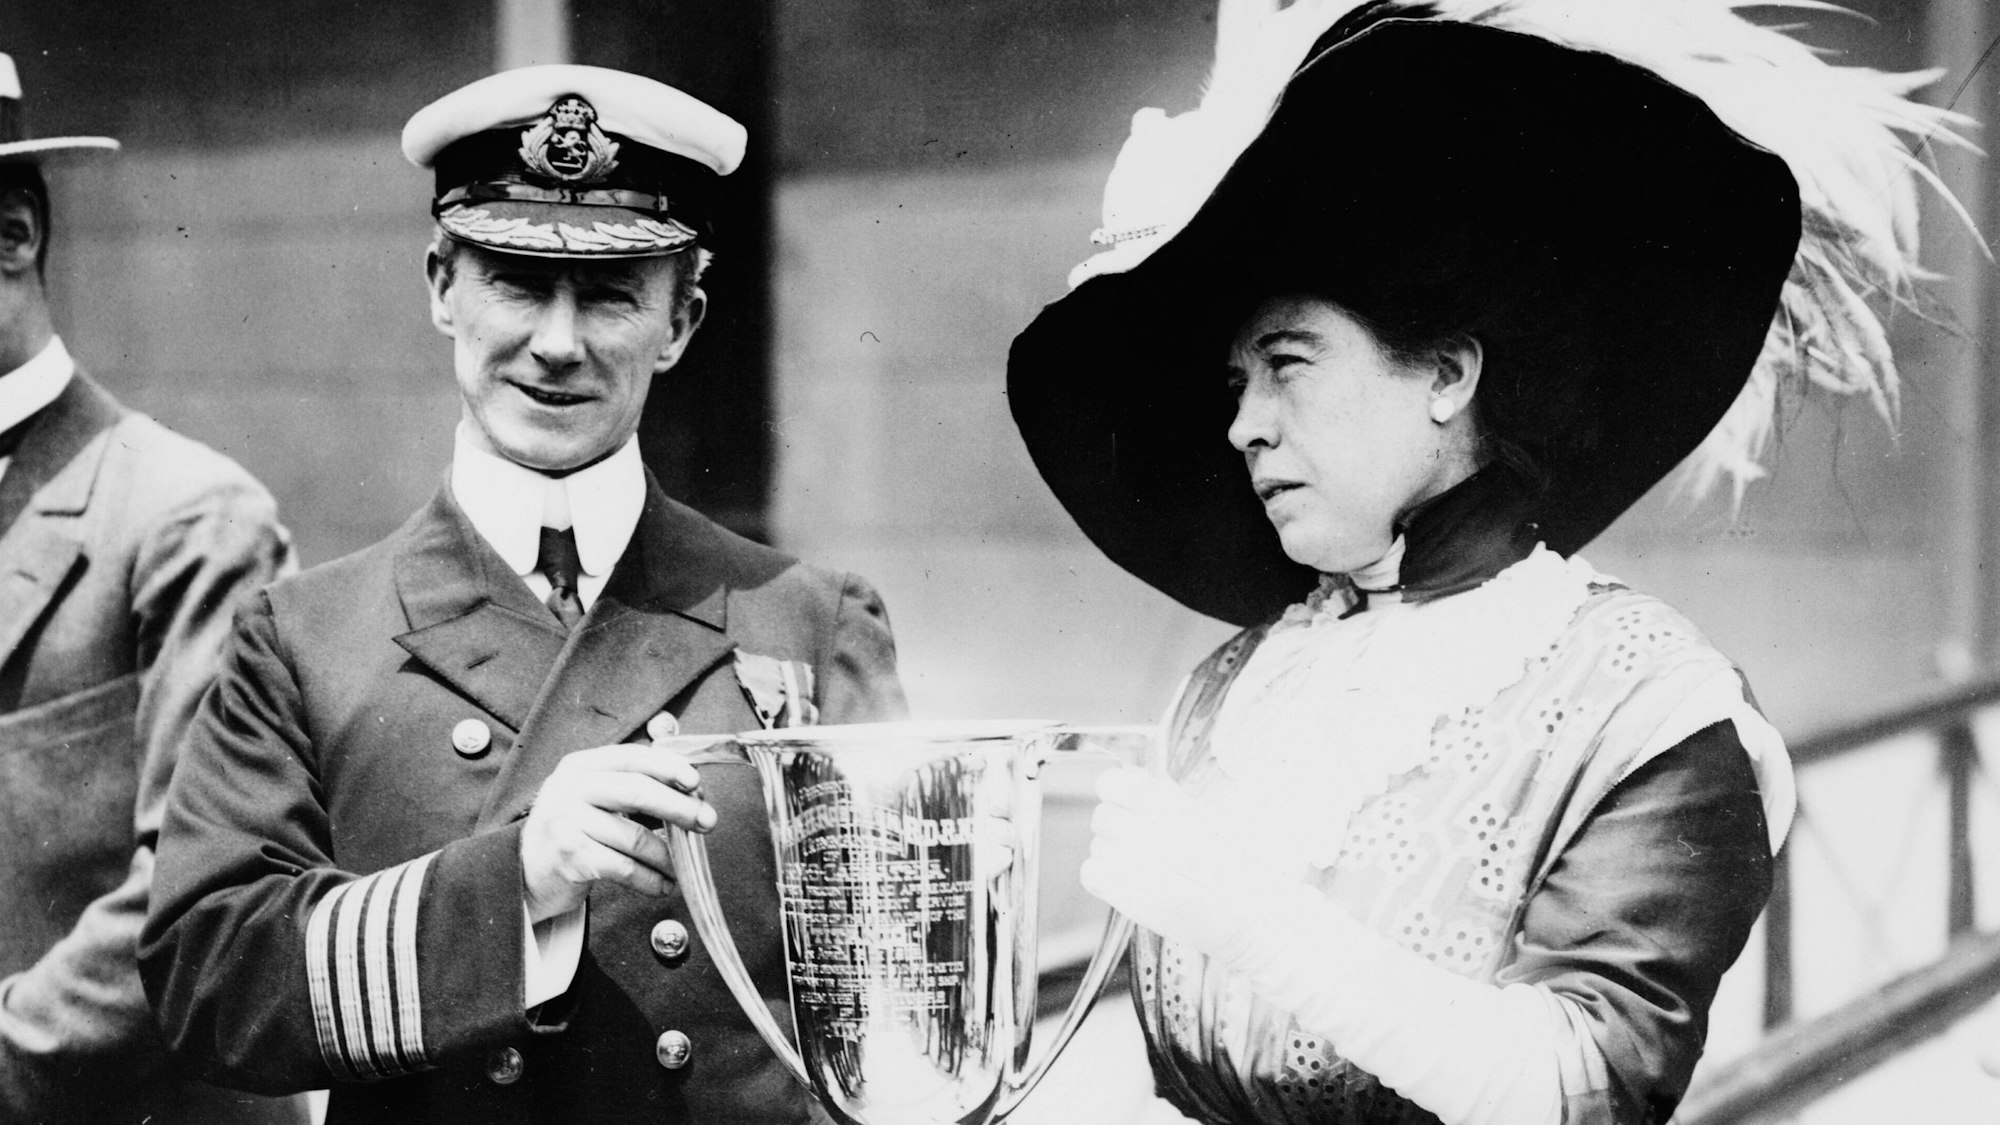 Molly Brown überreichte Kapitän A. H. Rostron, Kapitän der Carpathia, einen Pokal für seine Verdienste bei der Rettung von 705 Überlebenden der Titanic.